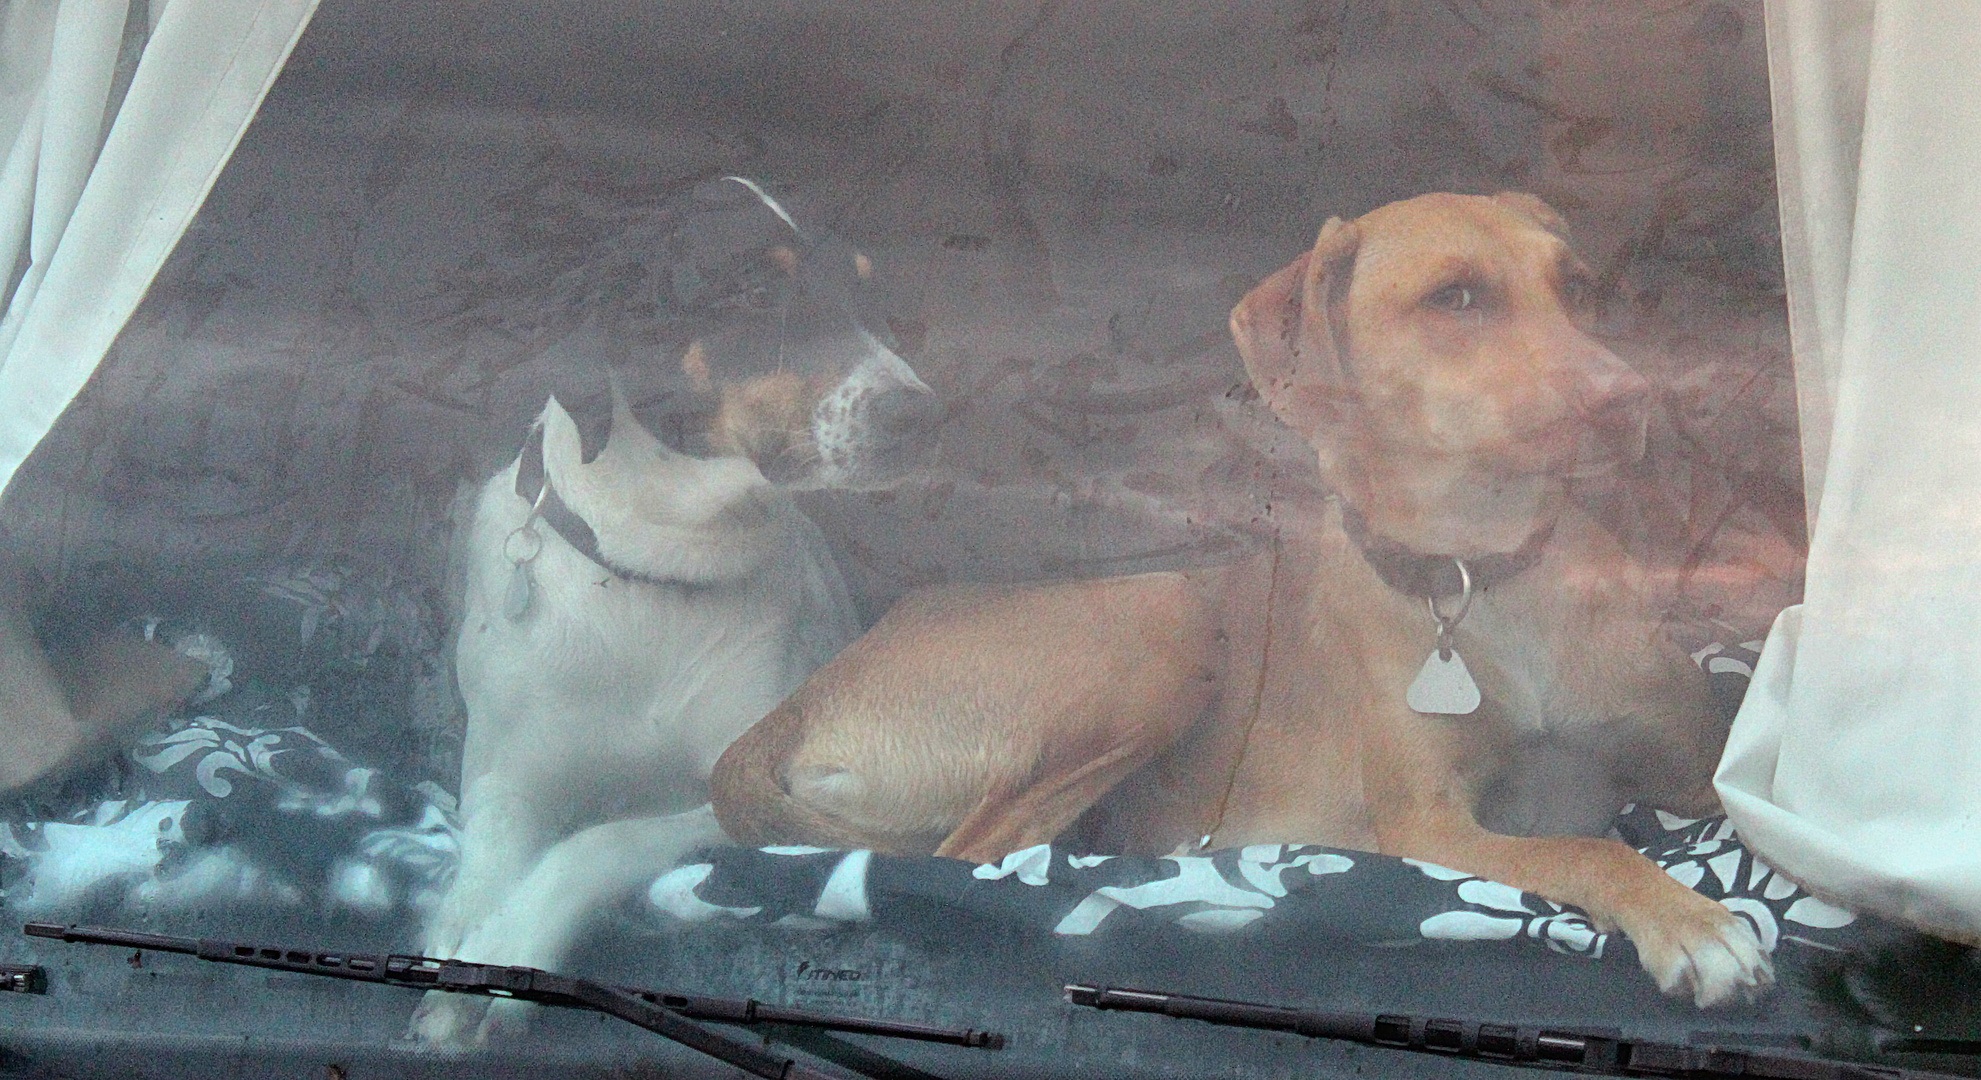 Zwei relatiev große Hunde hinter einer Wohnmobil Frontscheibe.